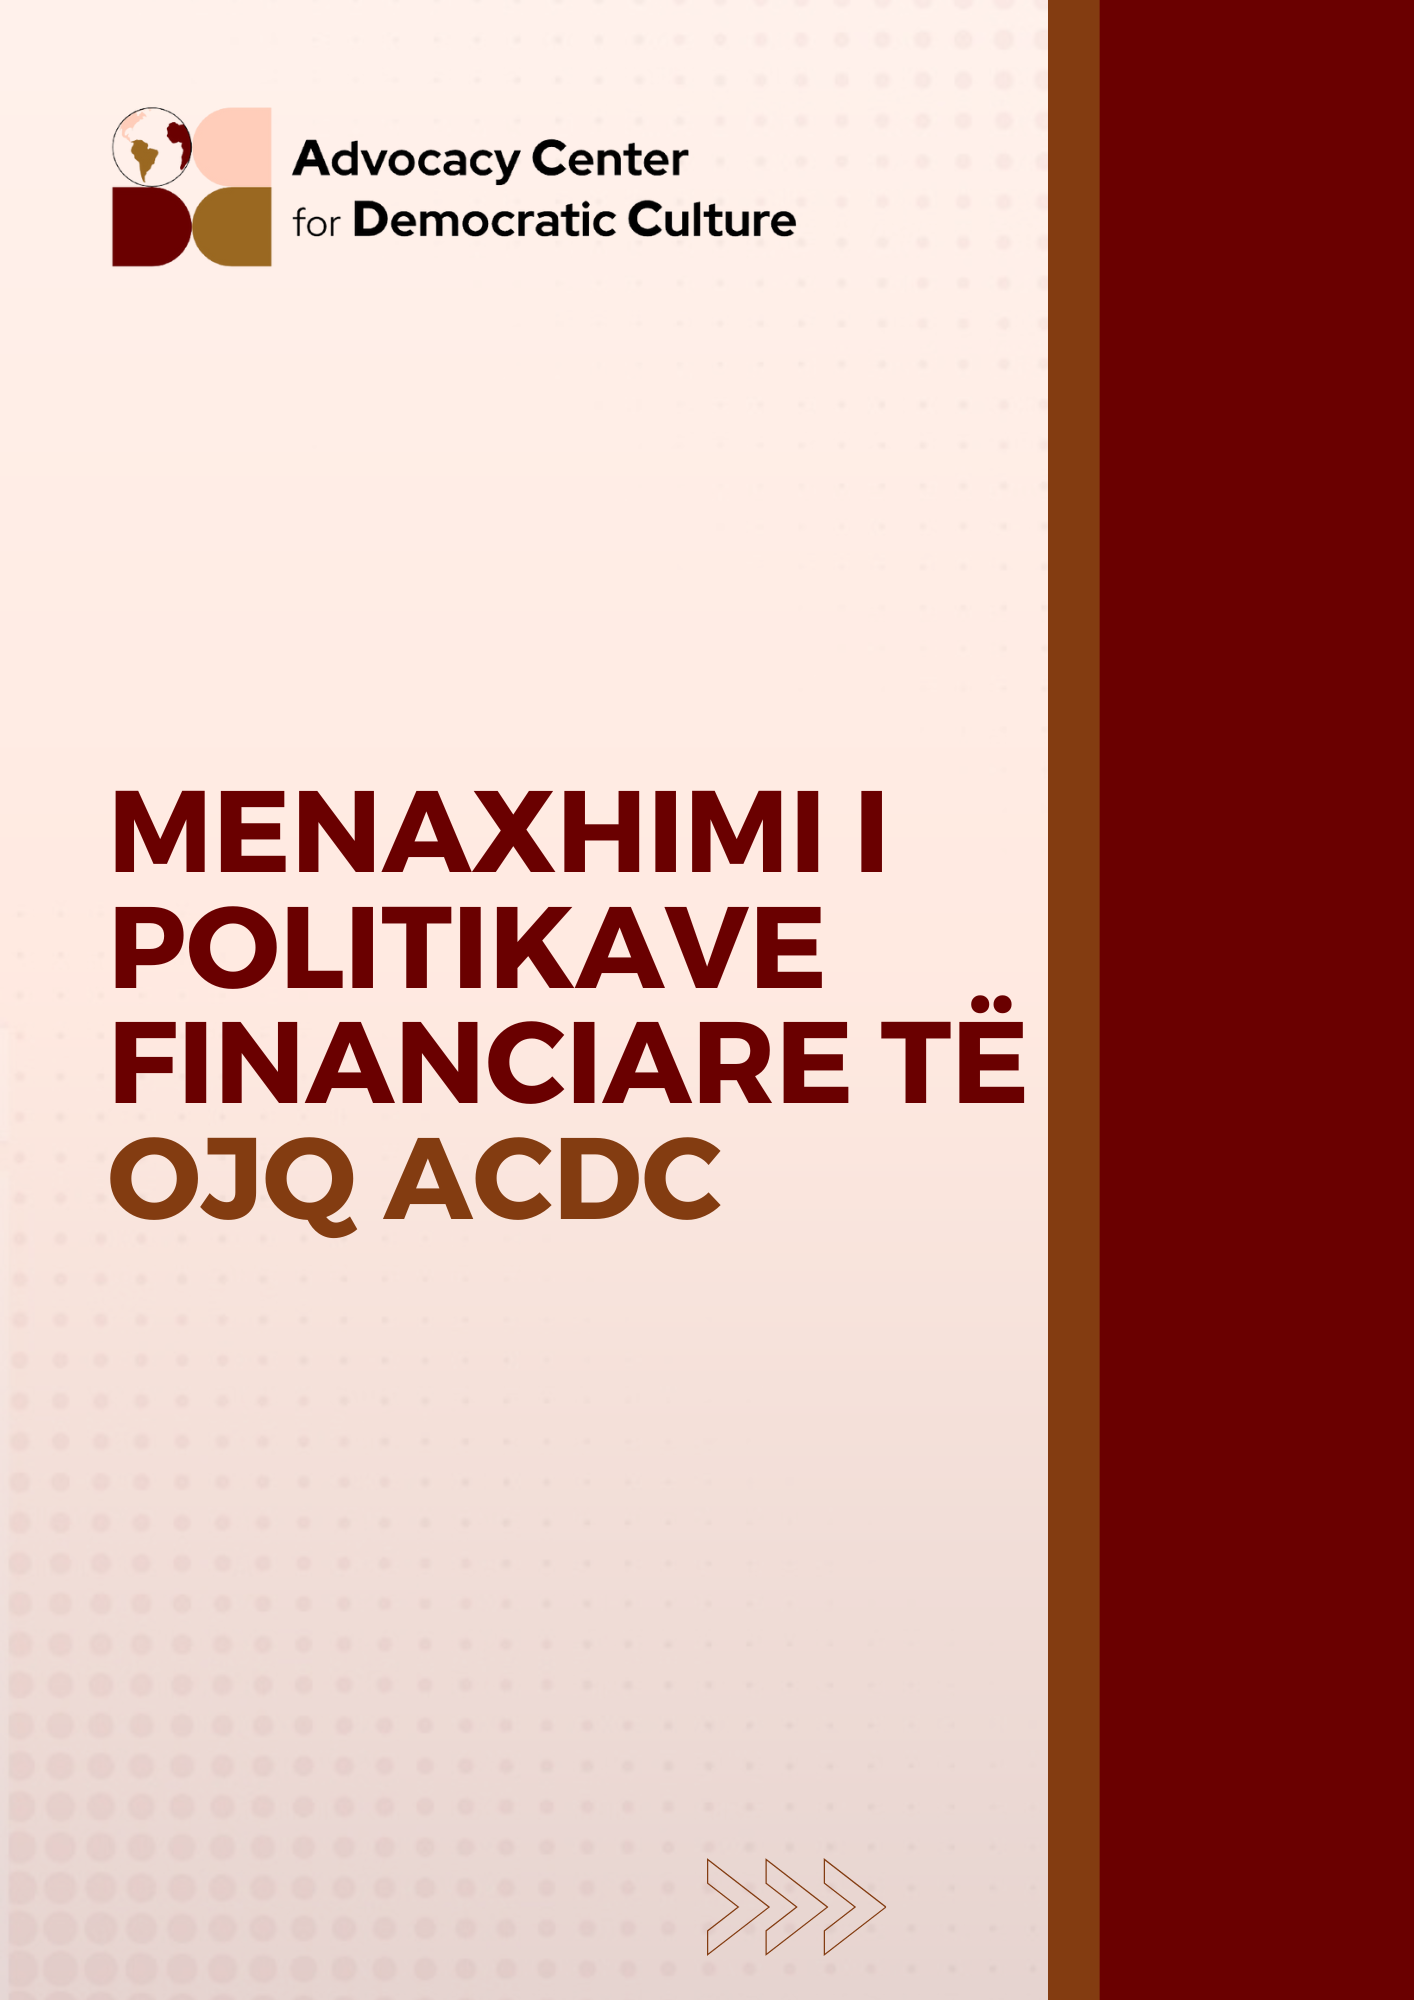 Menaxhimi i Politikave Financiare të OJQ ACDC